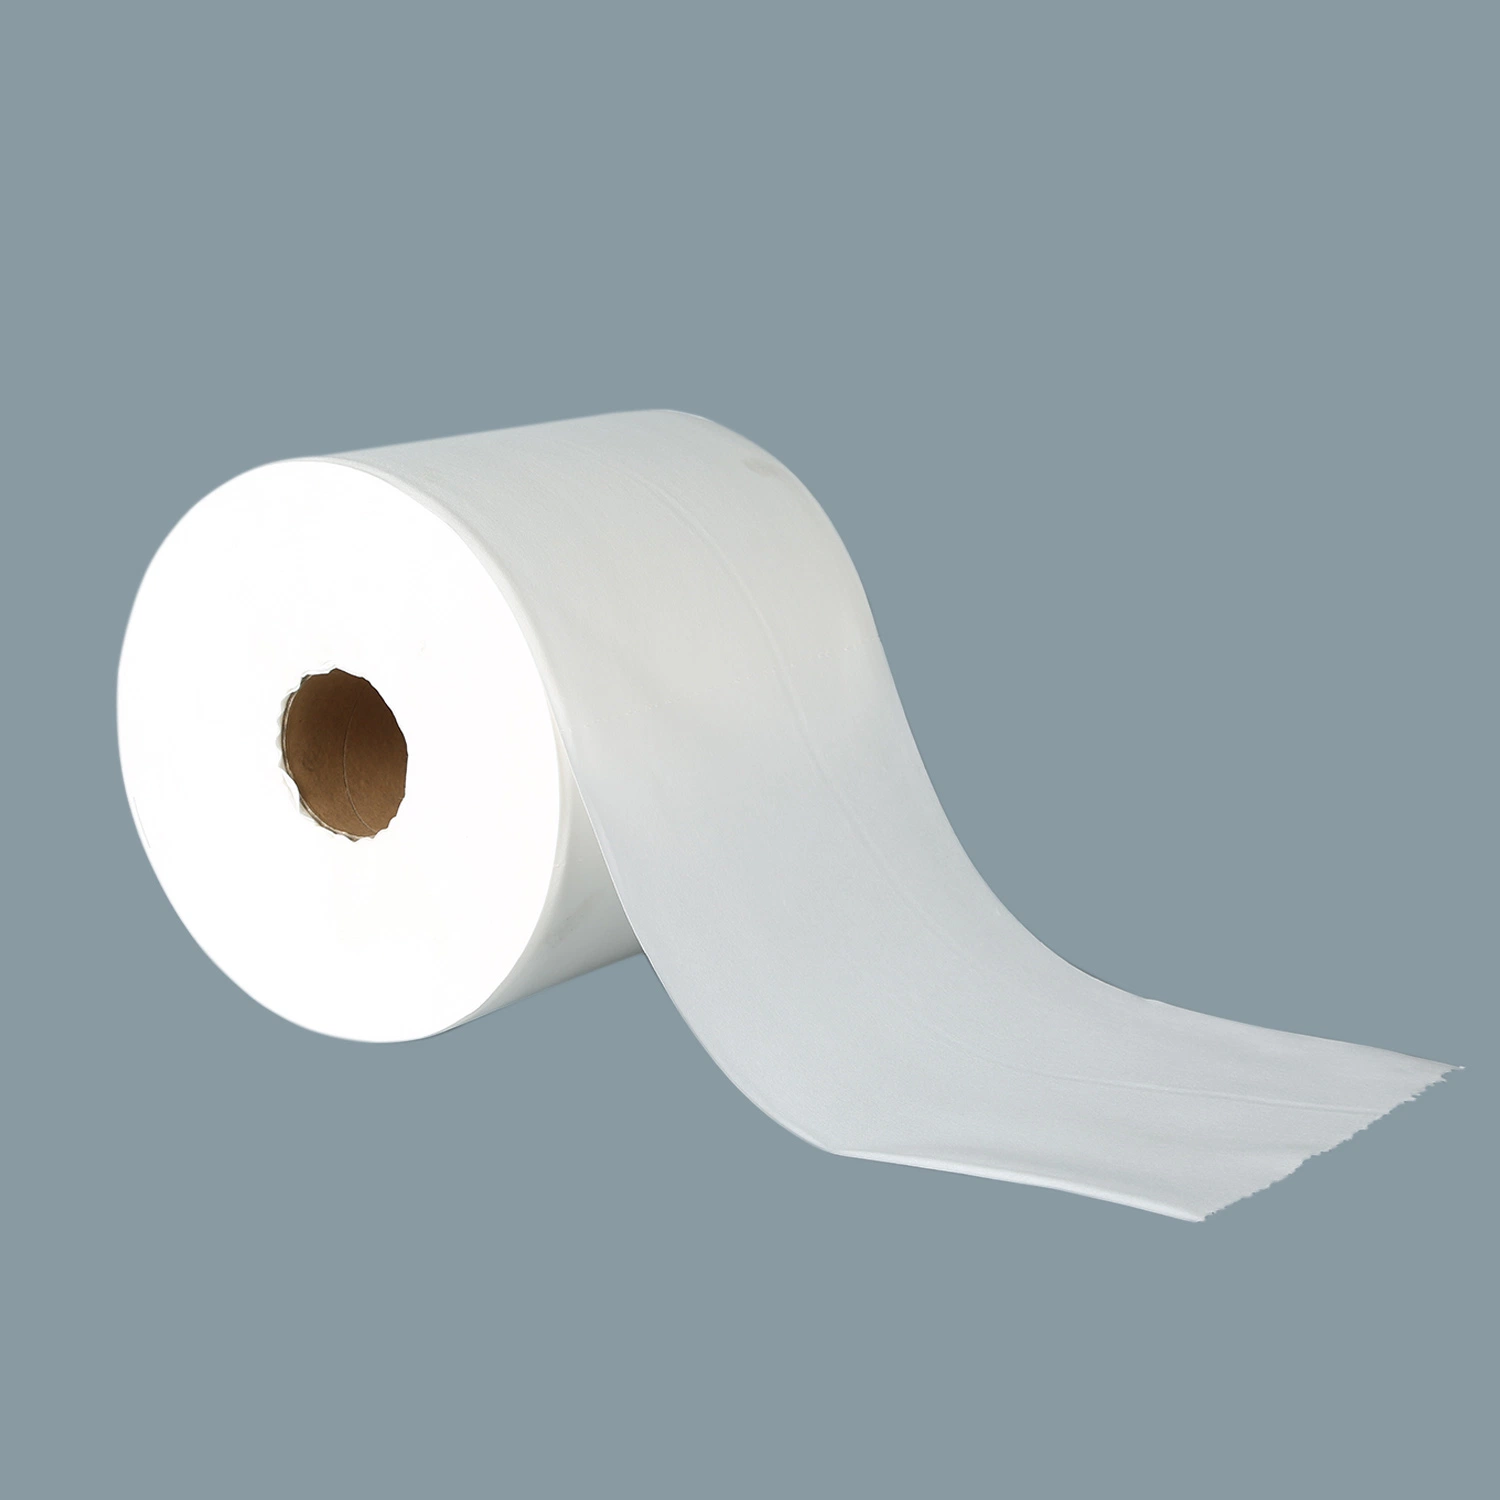 Протирочная ткань для протирки протирочная ткань ткань без ворса бумажная салфетка для очистки